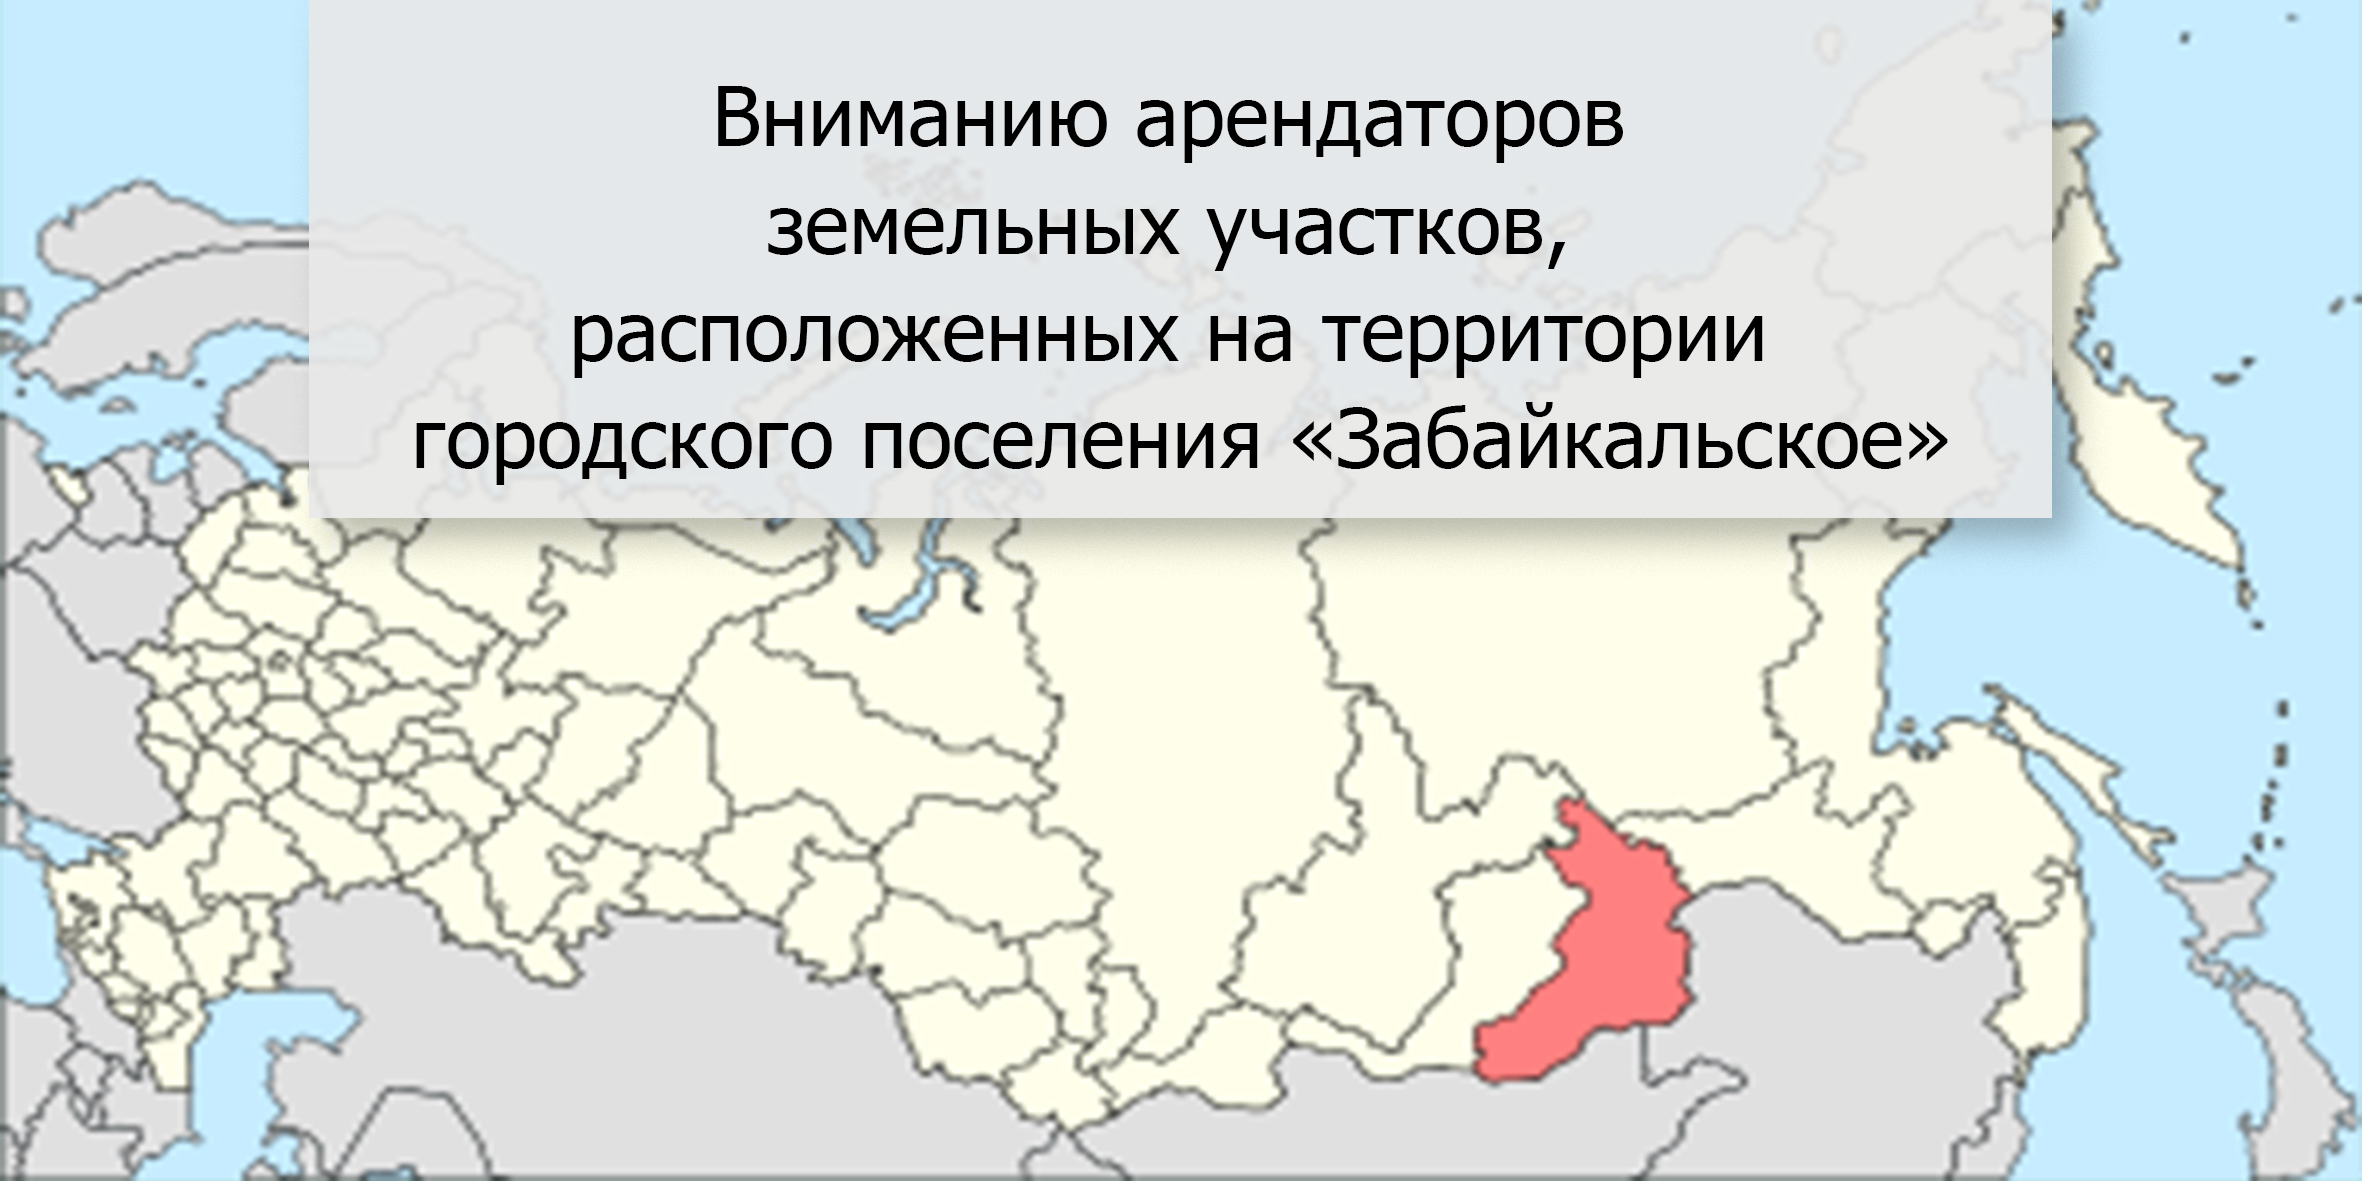 Вниманию арендаторов земельных участков, расположенных на территории городского поселения «Забайкальское».